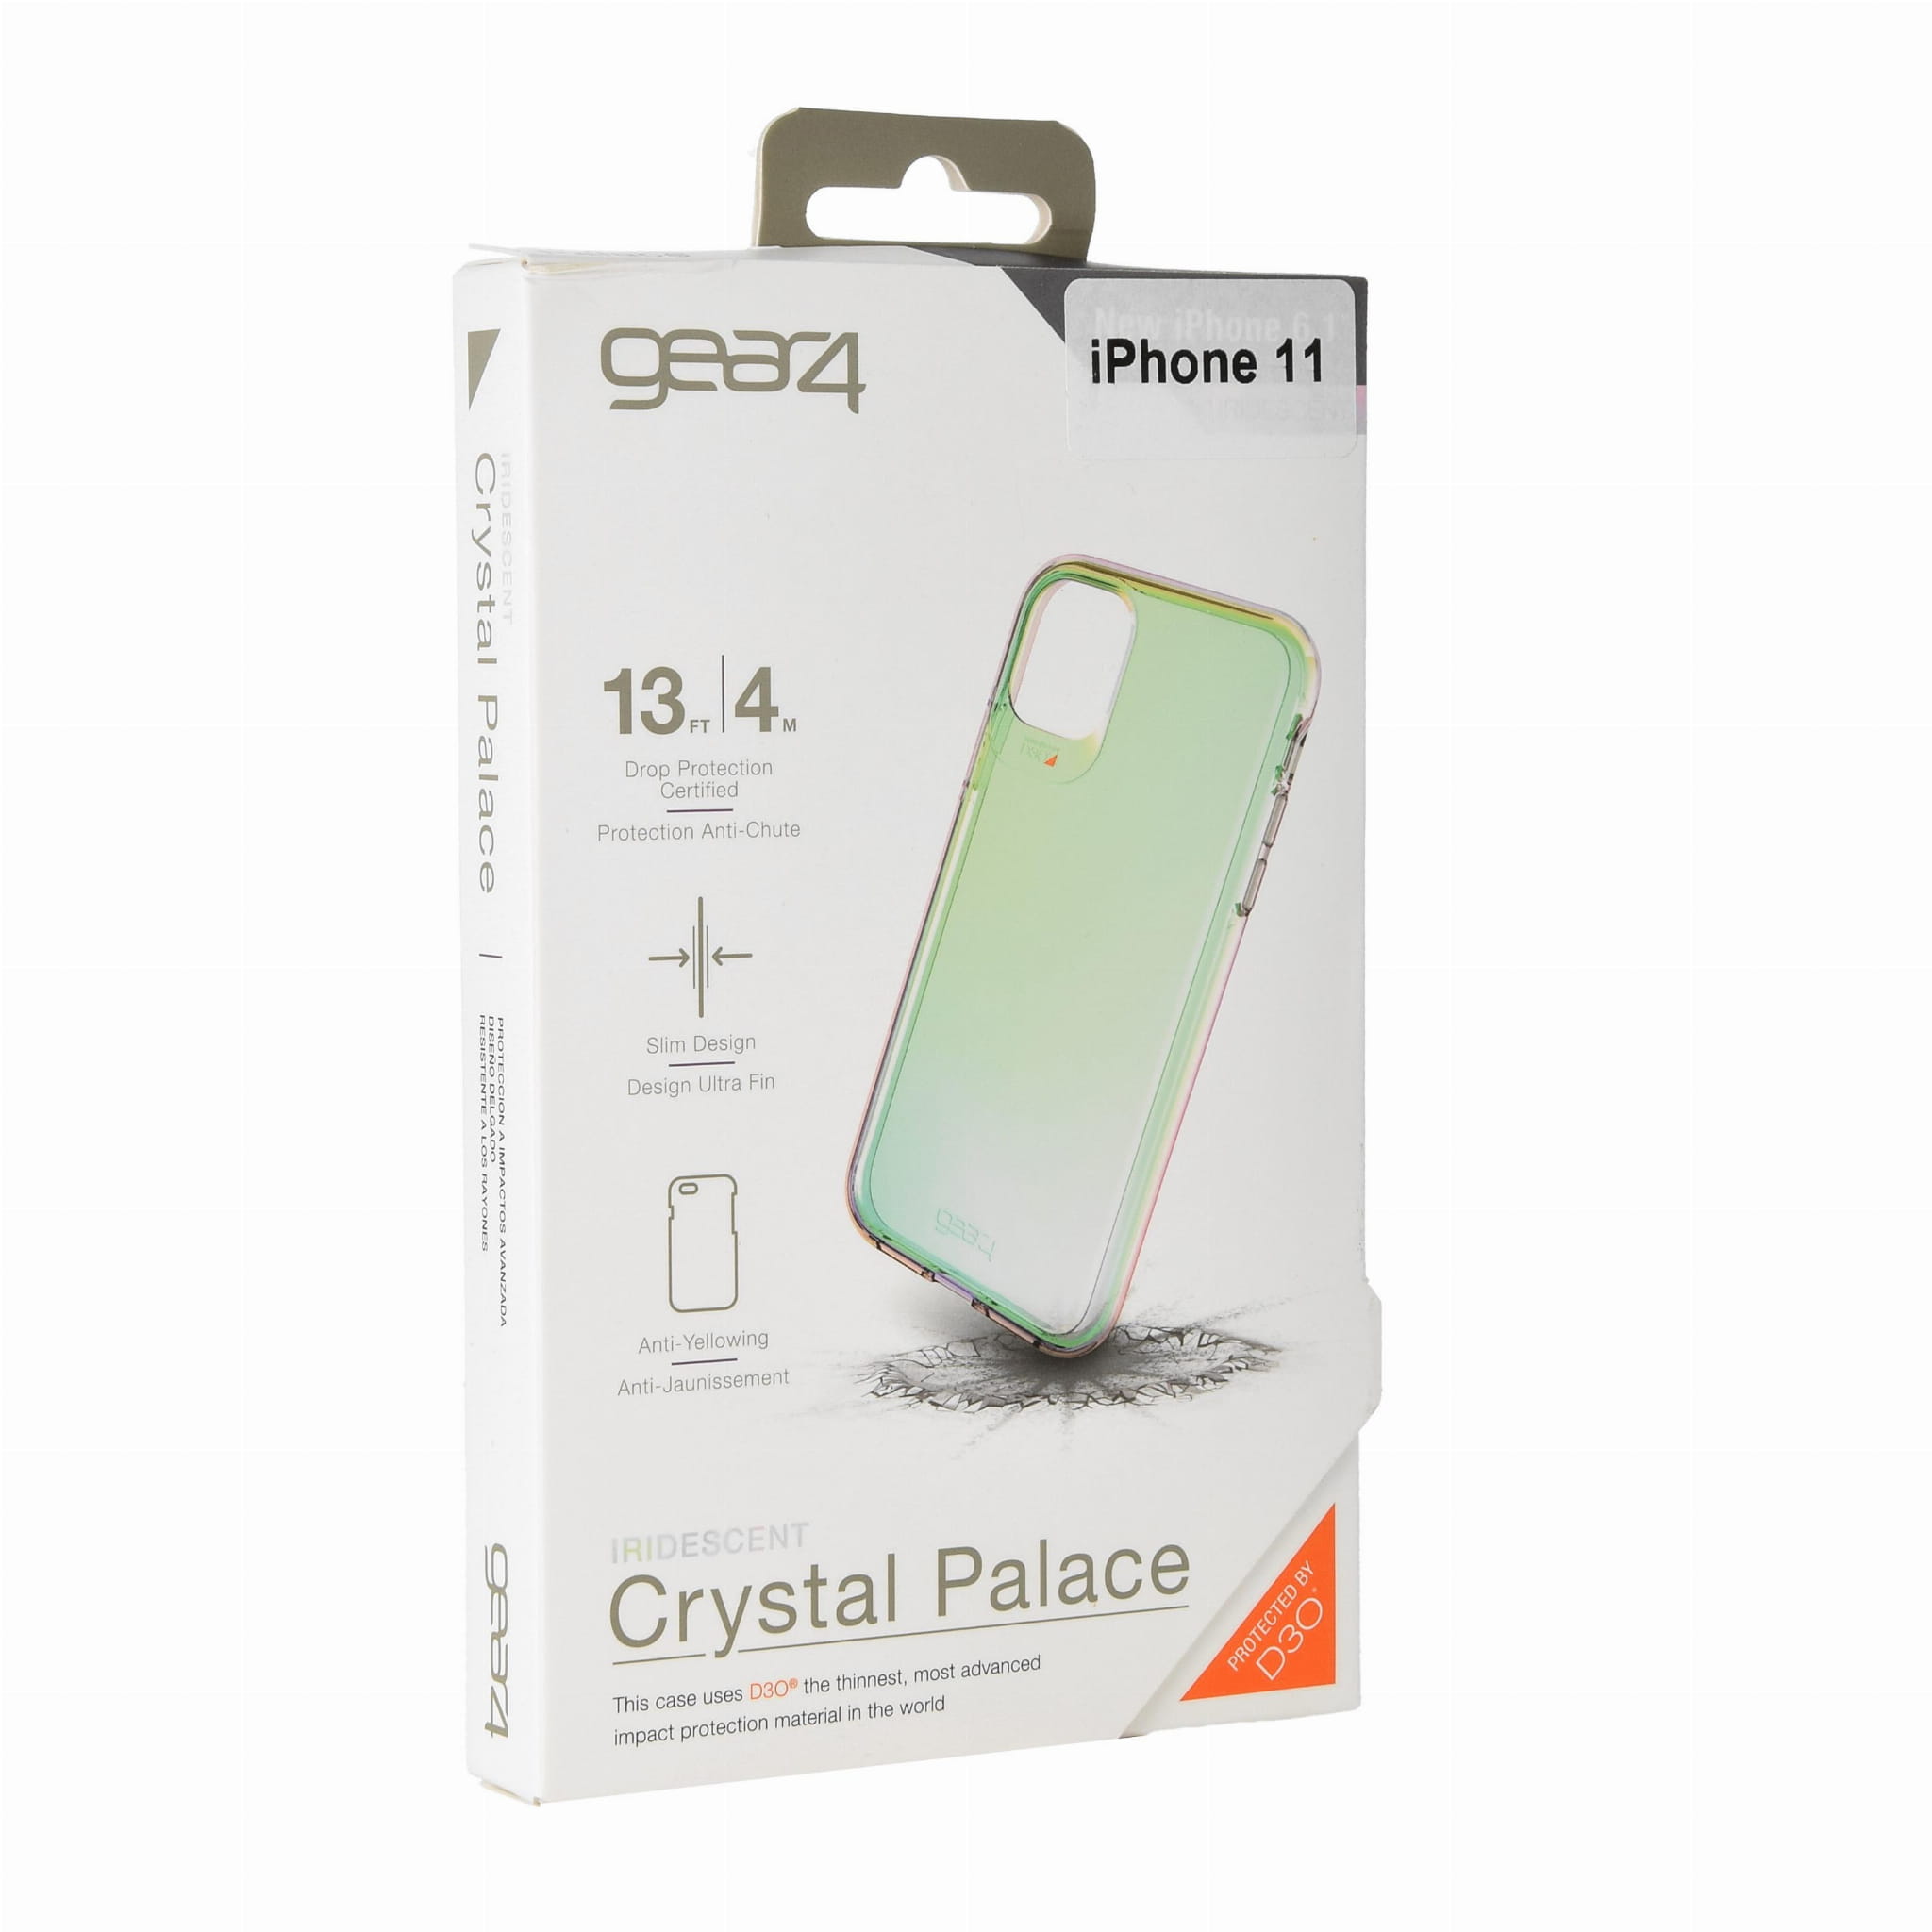 Schutzhülle Gear4 aus der Serie Crystal Palace für iPhone 11 irisierend.